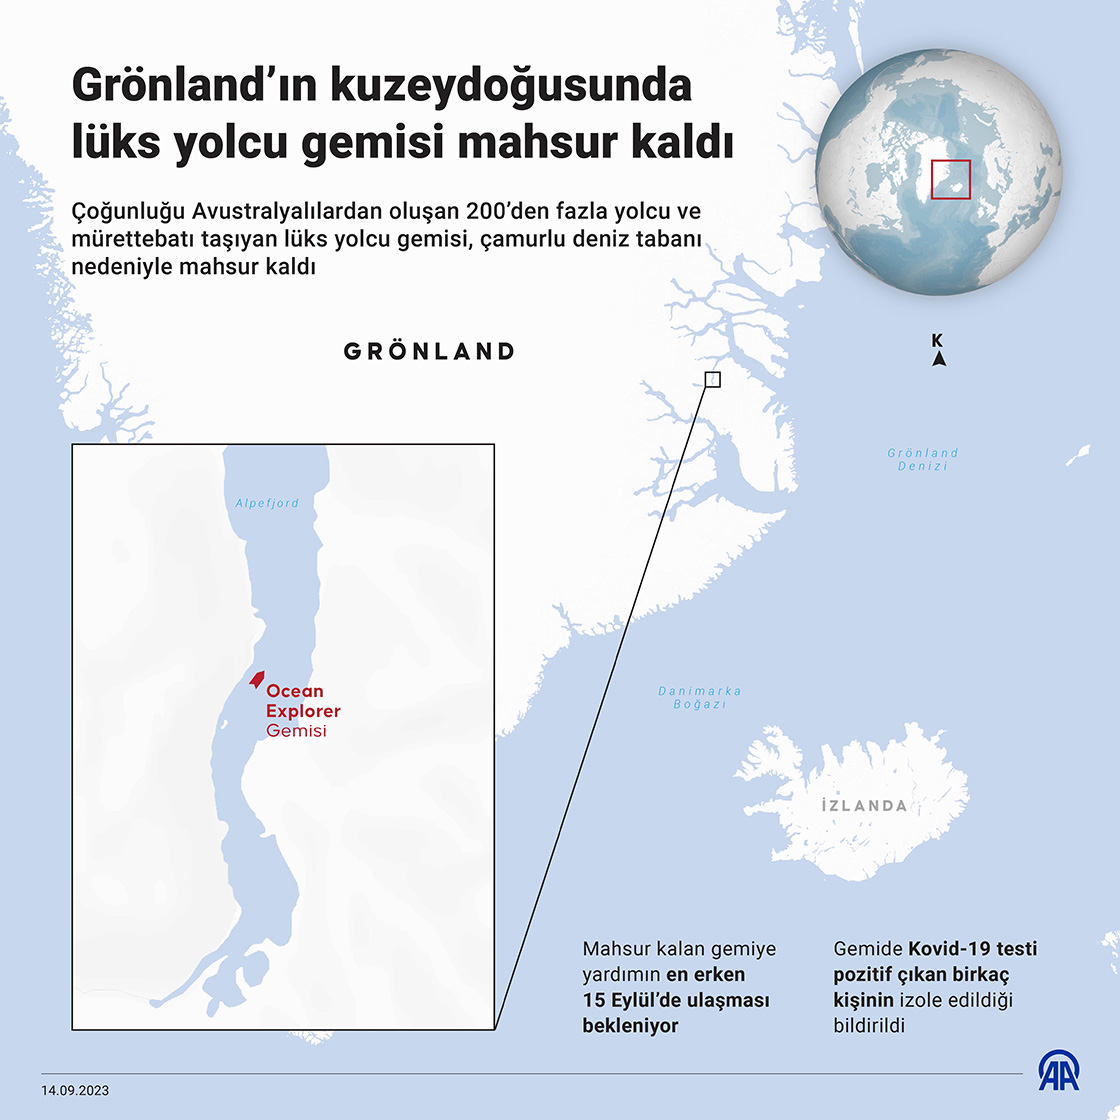 Grönland’ın kuzeydoğusunda lüks yolcu gemisi mahsur kaldı